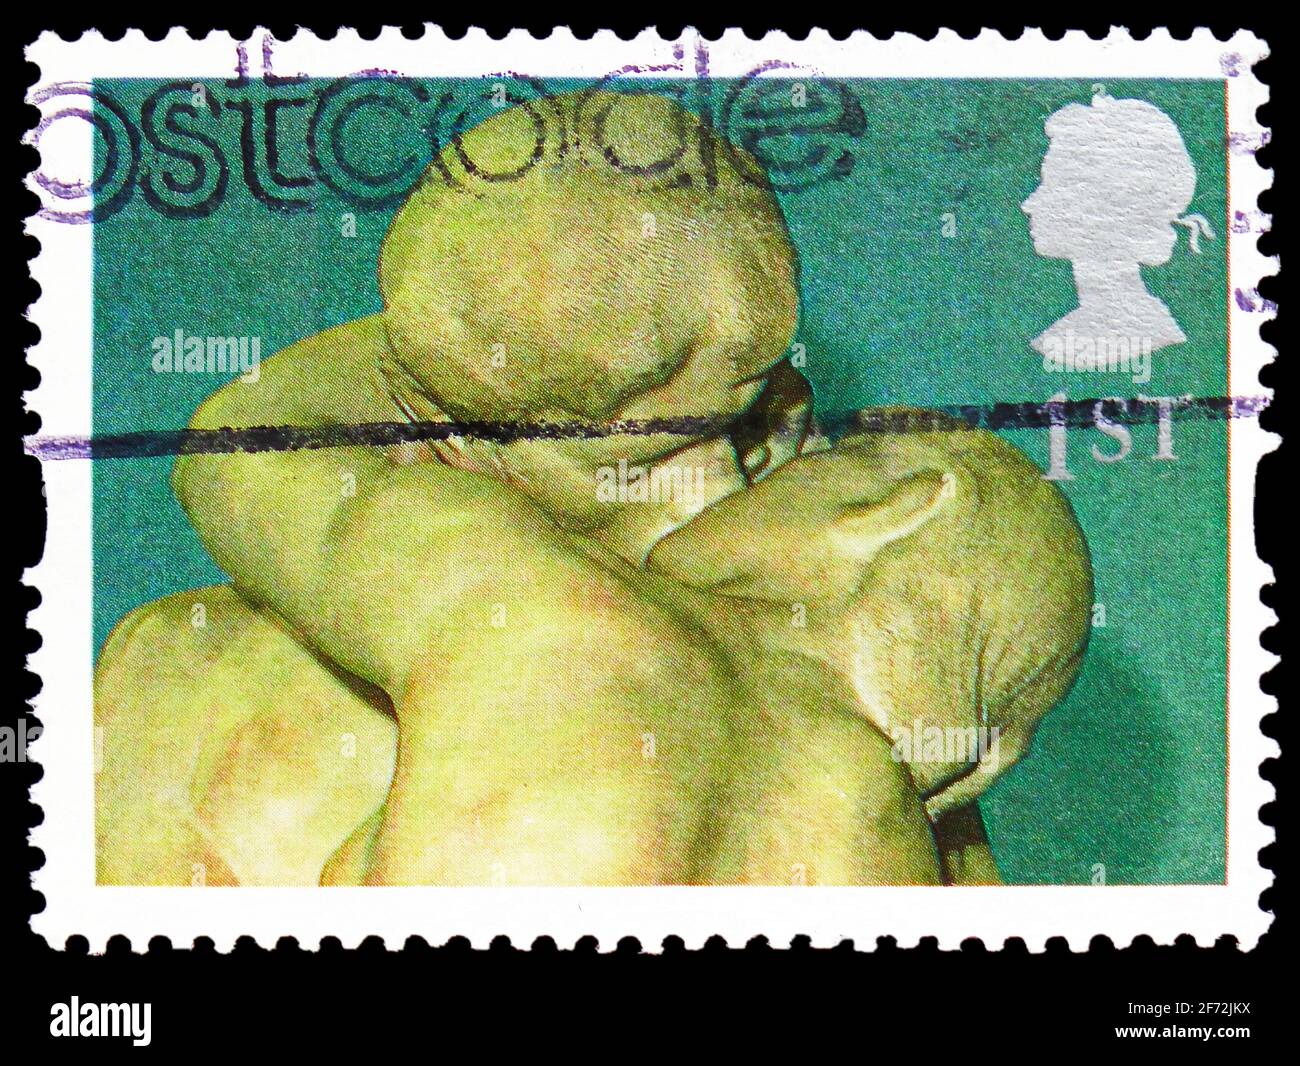 MOSCOU, RUSSIE - 22 DÉCEMBRE 2020: Timbre-poste imprimé au Royaume-Uni montre 'The Kiss' (Rodin), cartes de voeux 1995 - série d'art, vers 1995 Banque D'Images